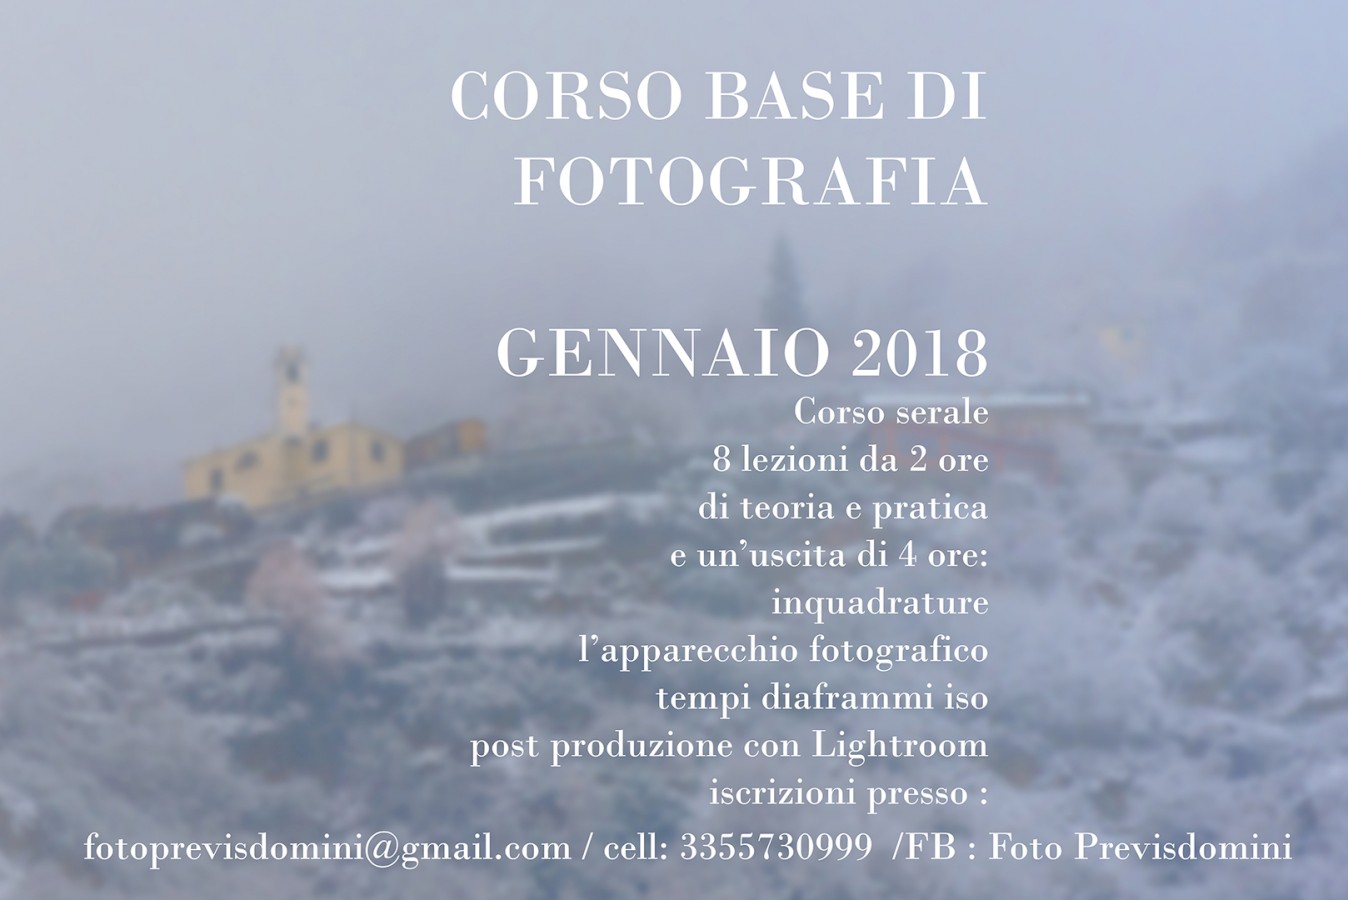 CORSO BASE DI FOTOGRAFIA GENNAIO 2018